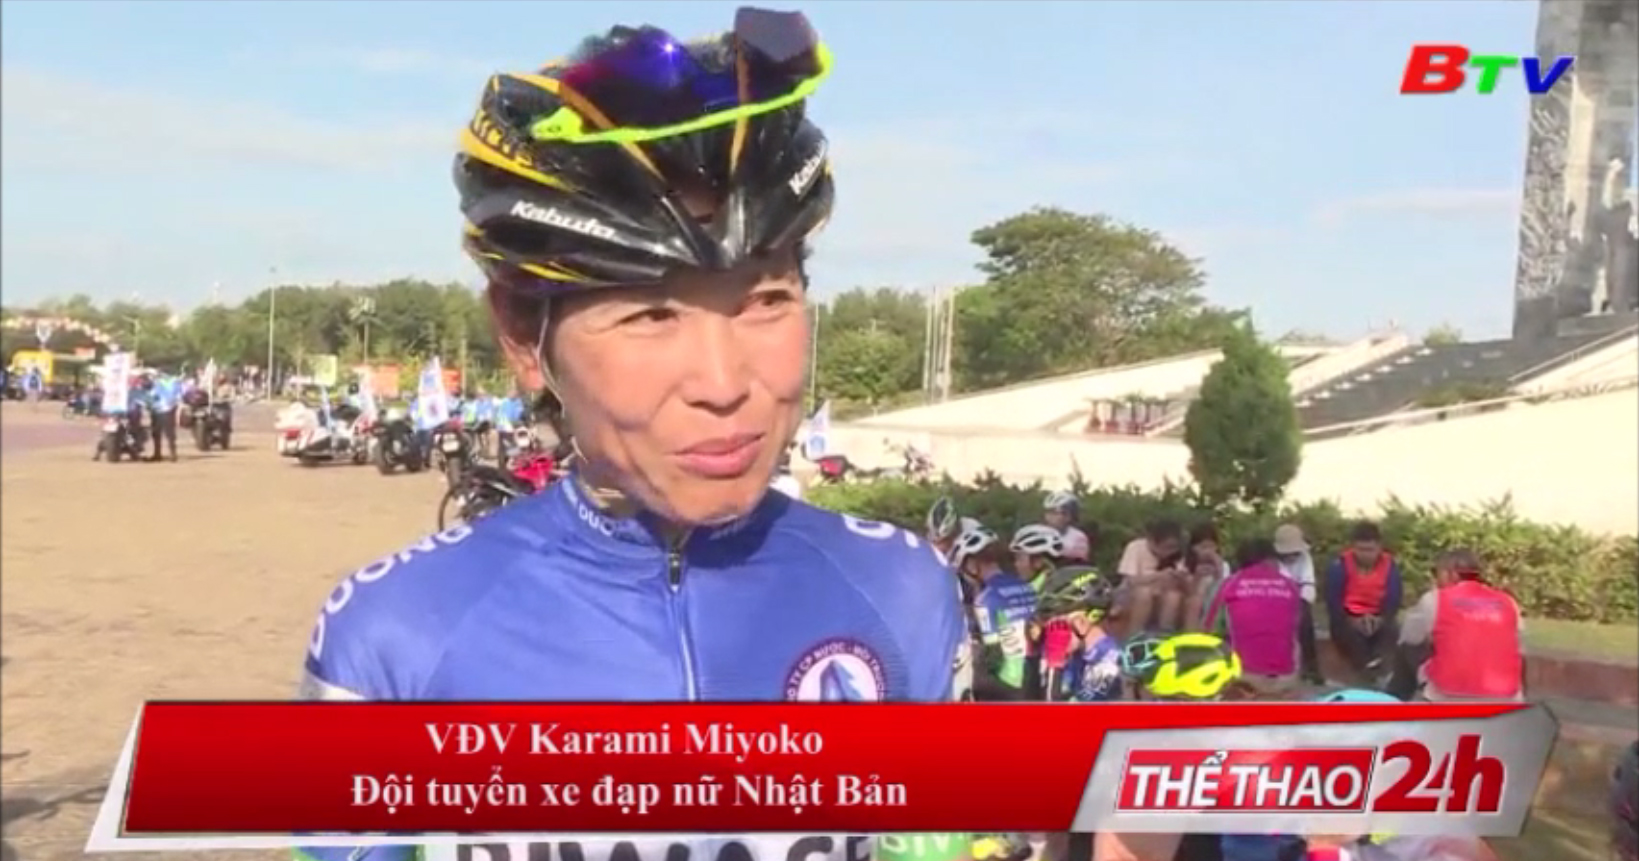 Karami Miyoko - Tấm gương sáng về tinh thần thể thao tại Biwase Cup 2020